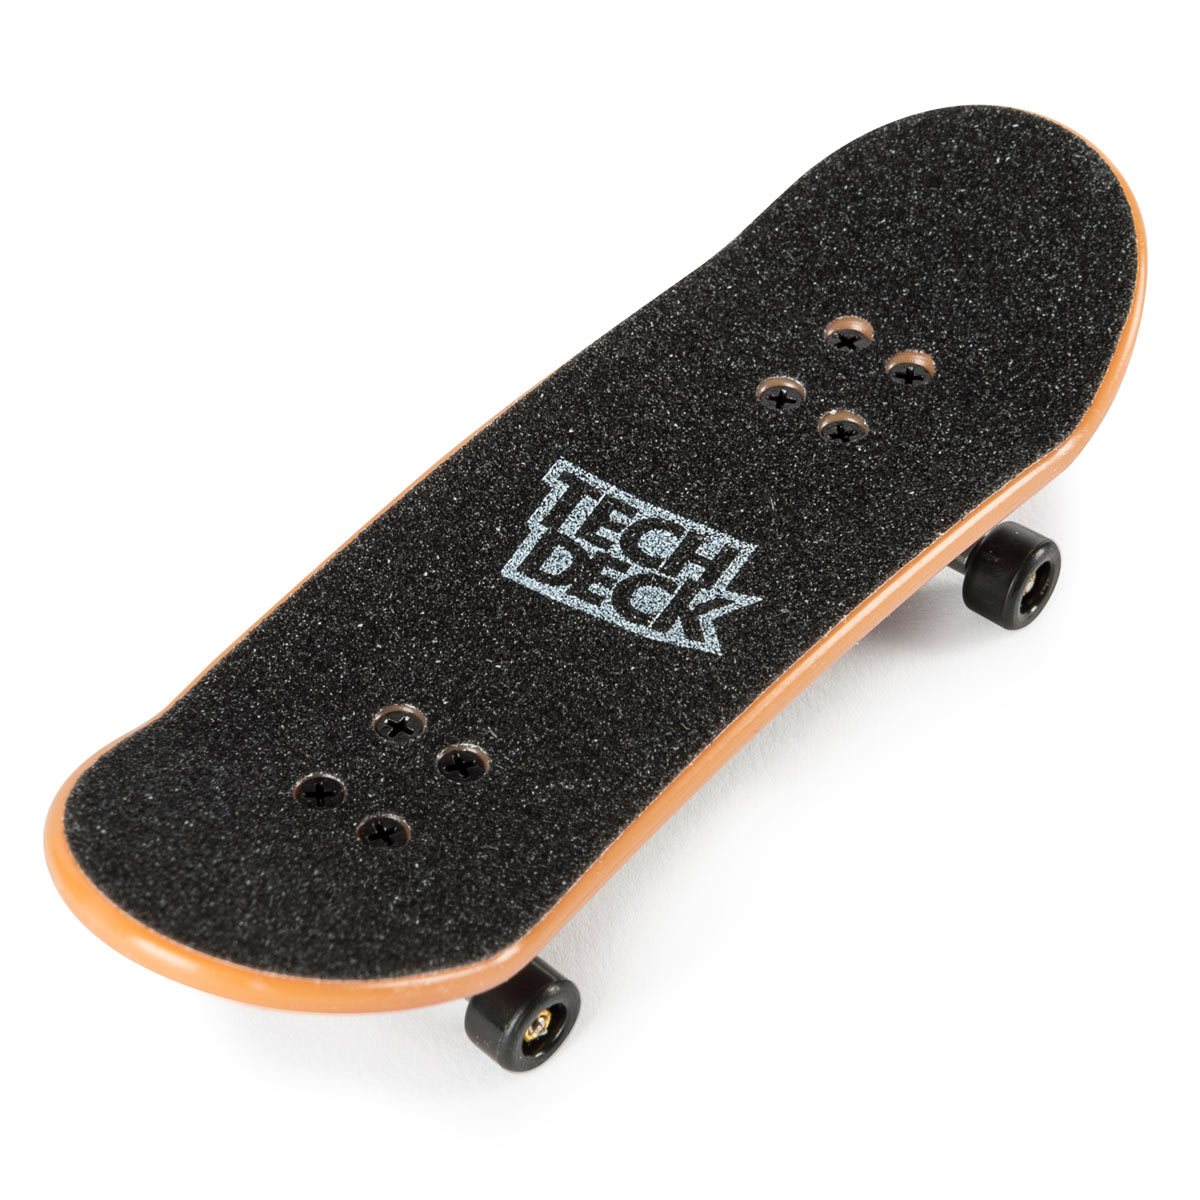 Tech Deck 96mm Fingerboard Mini Skateboard